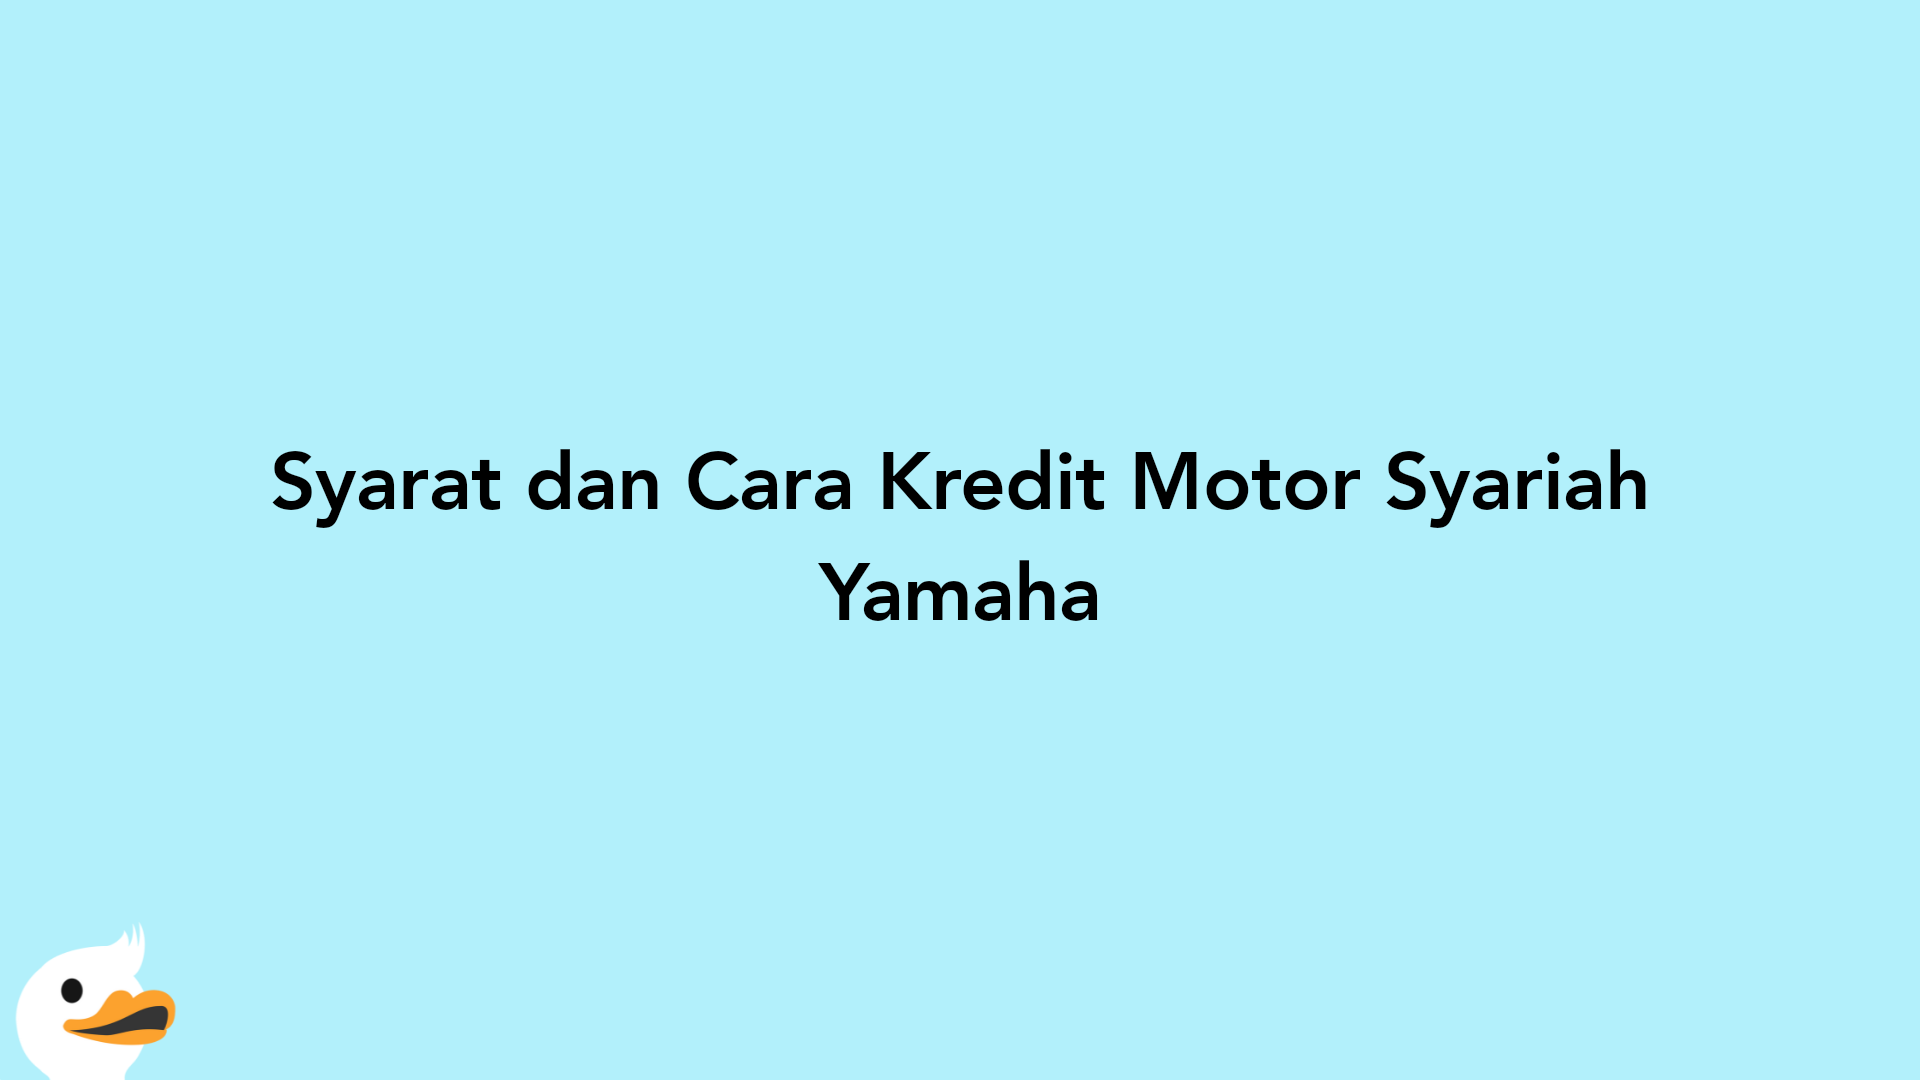 Syarat dan Cara Kredit Motor Syariah Yamaha